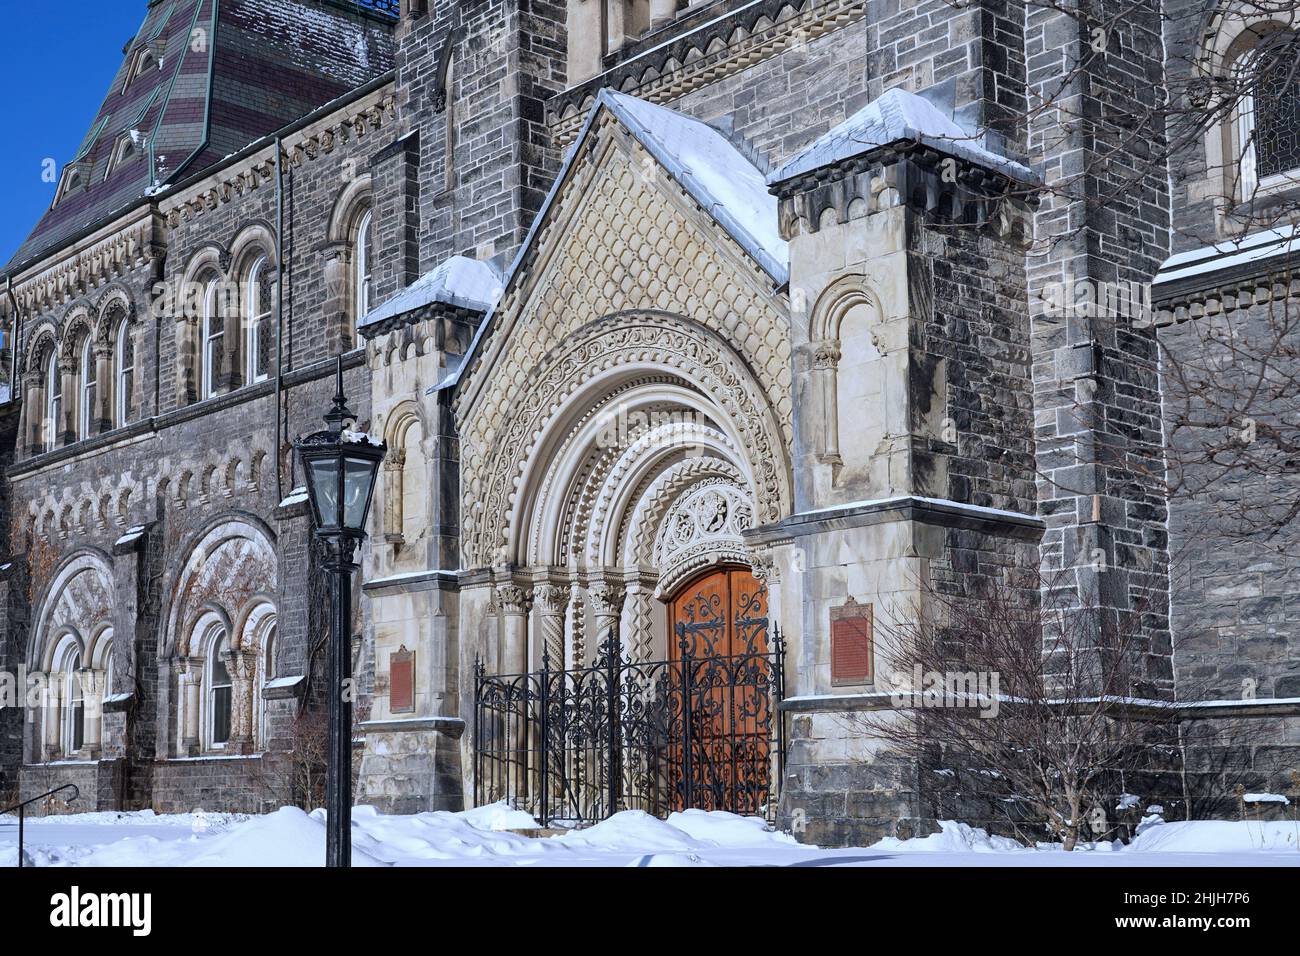 Façade de l'édifice collégial en pierre gothique de l'Université de Toronto en hiver Banque D'Images